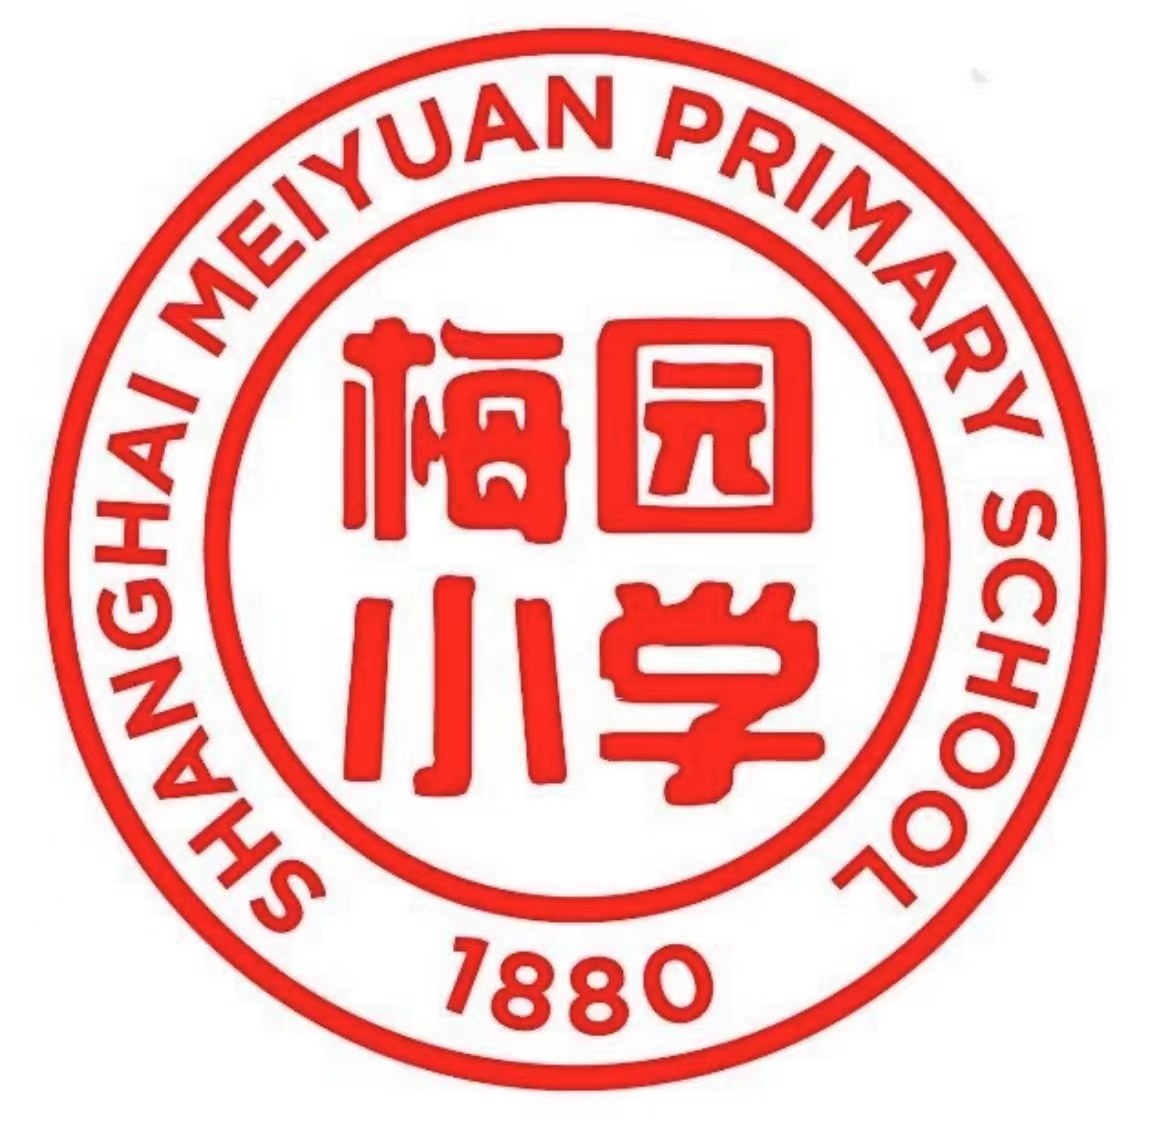 P014Meiyuan Primary School